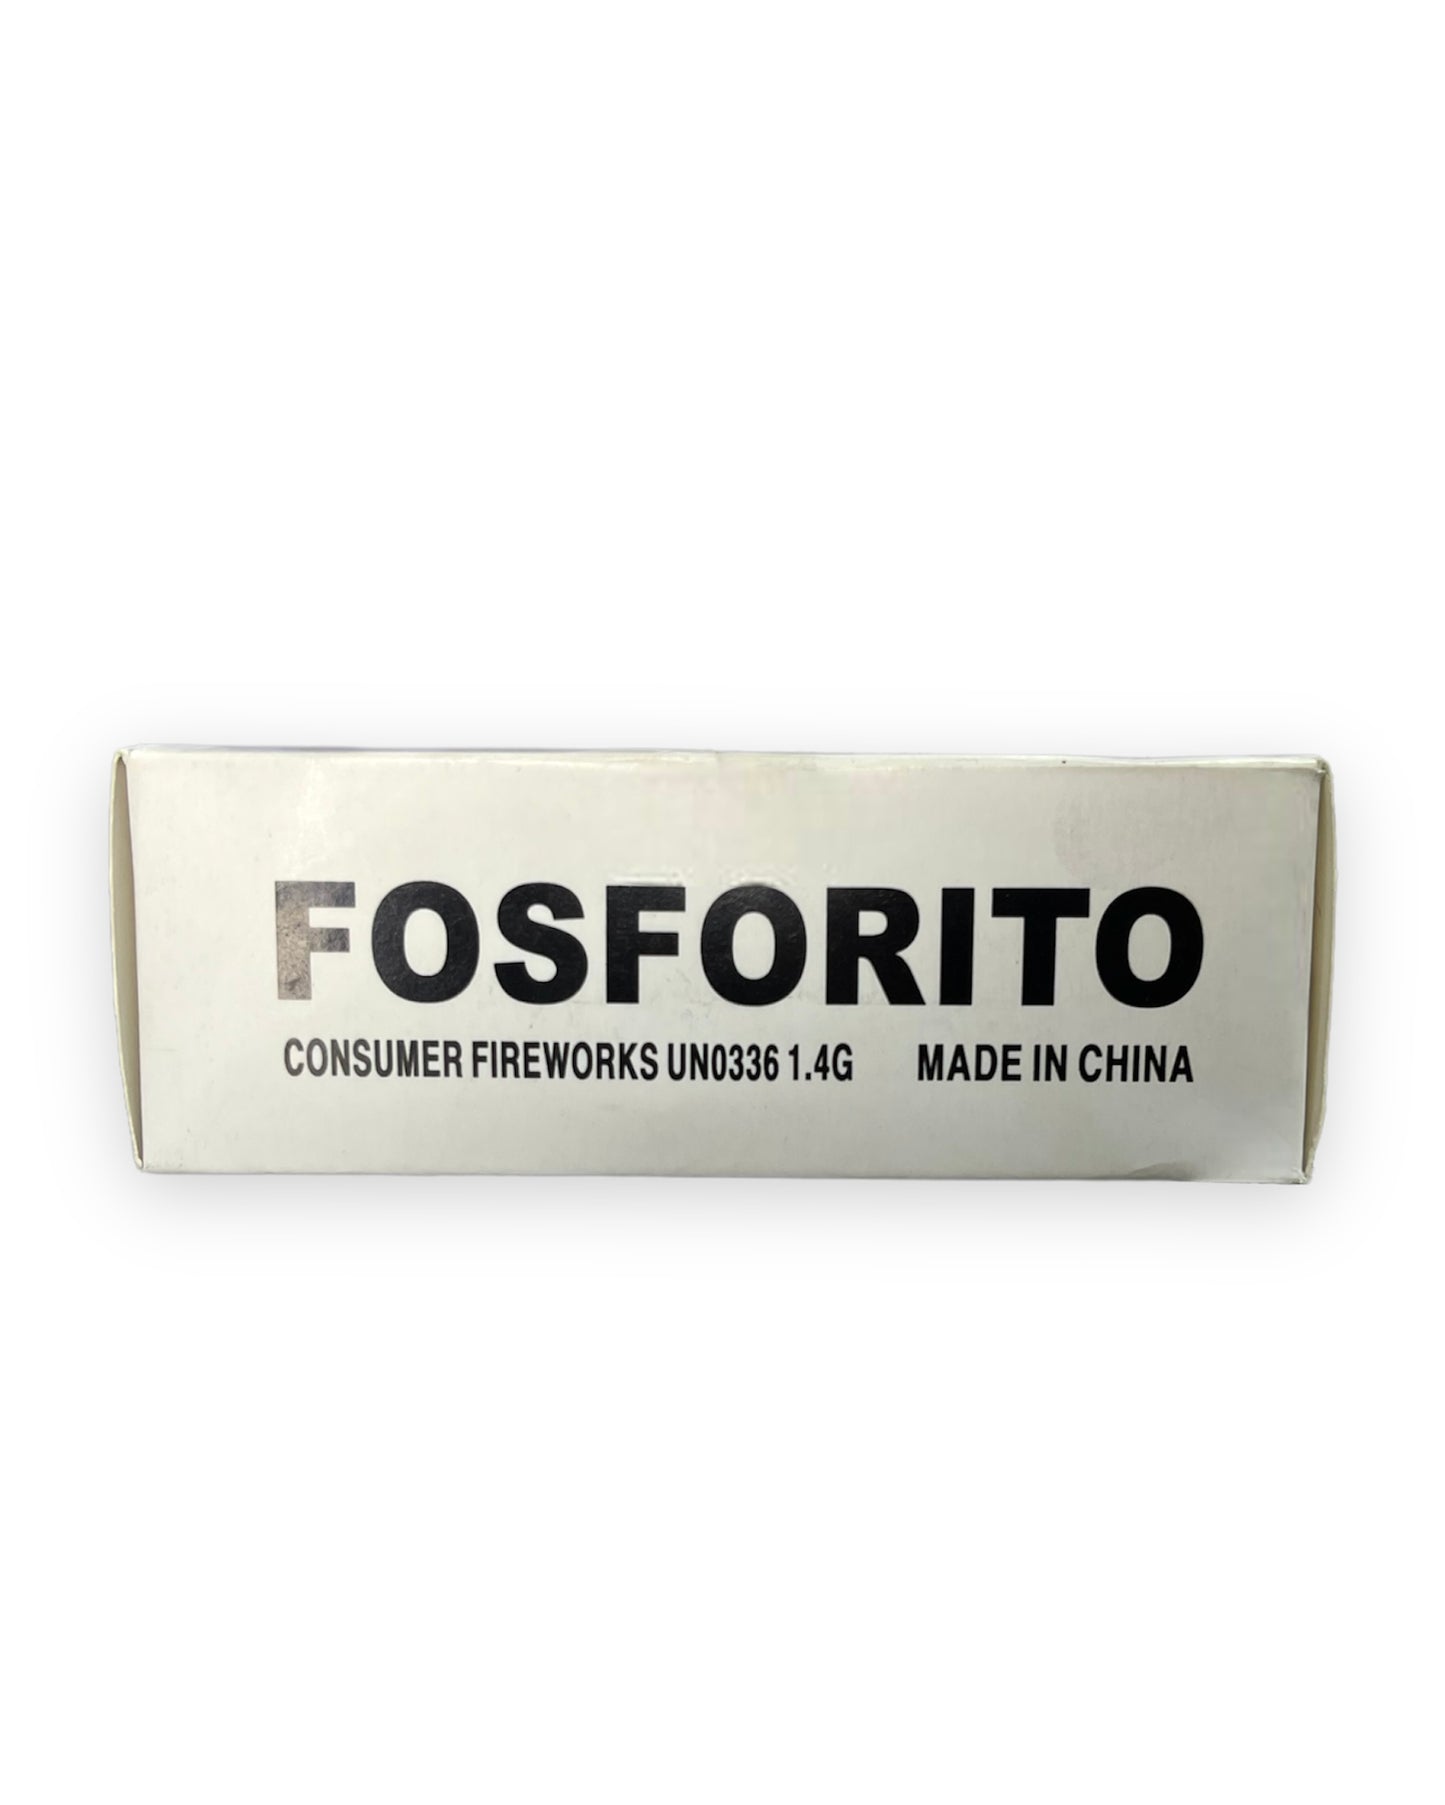 FOSFORITO 2 TIROS